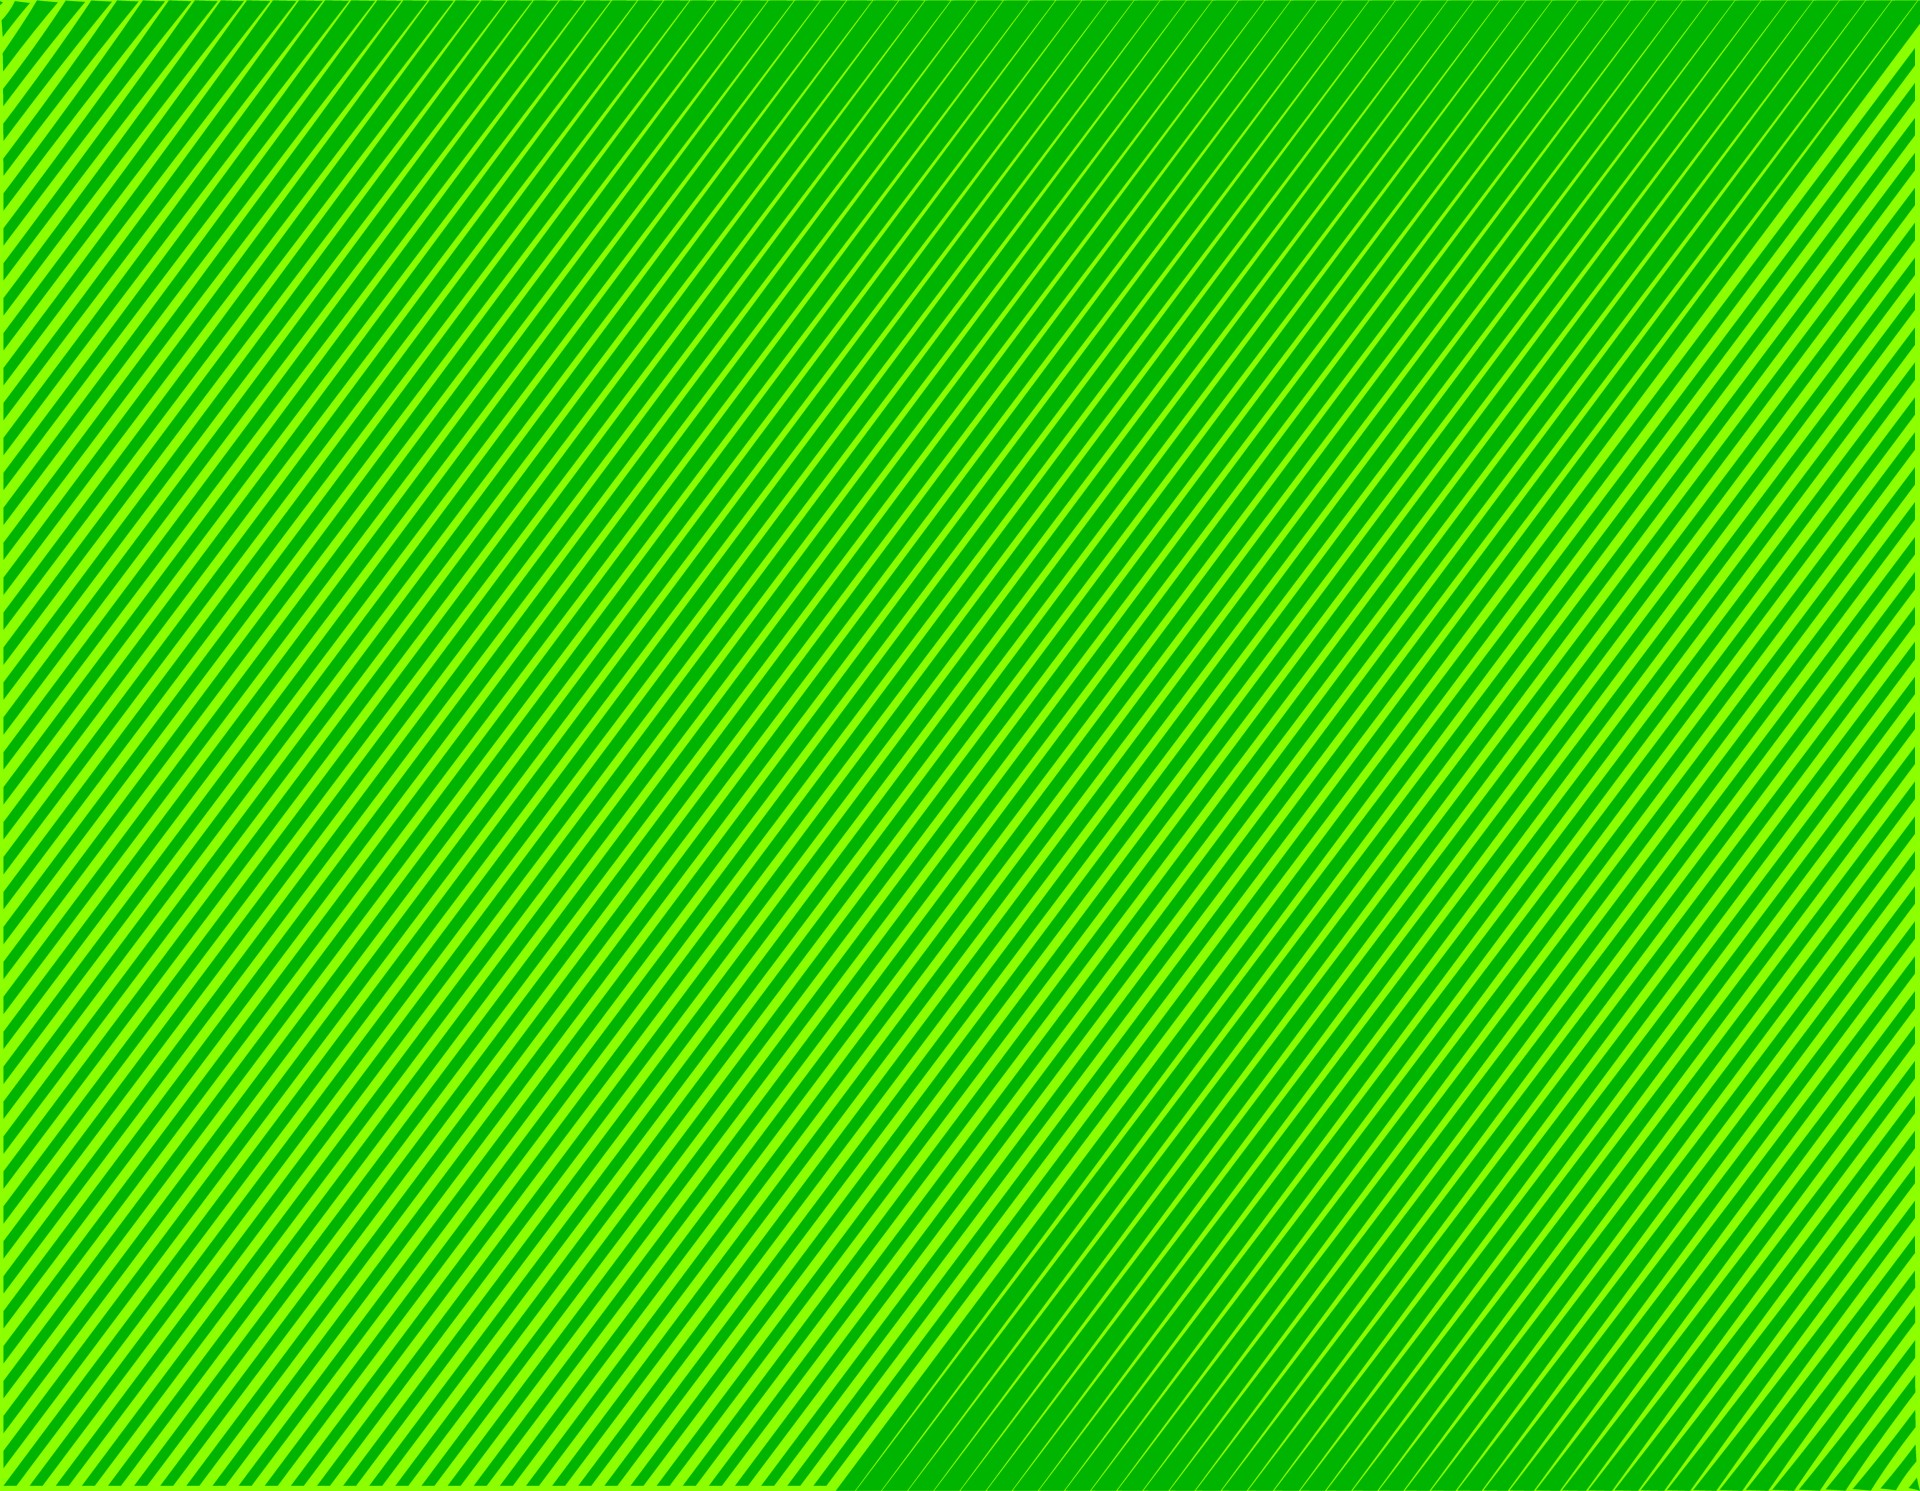 Green Abstract Background, originally a vector